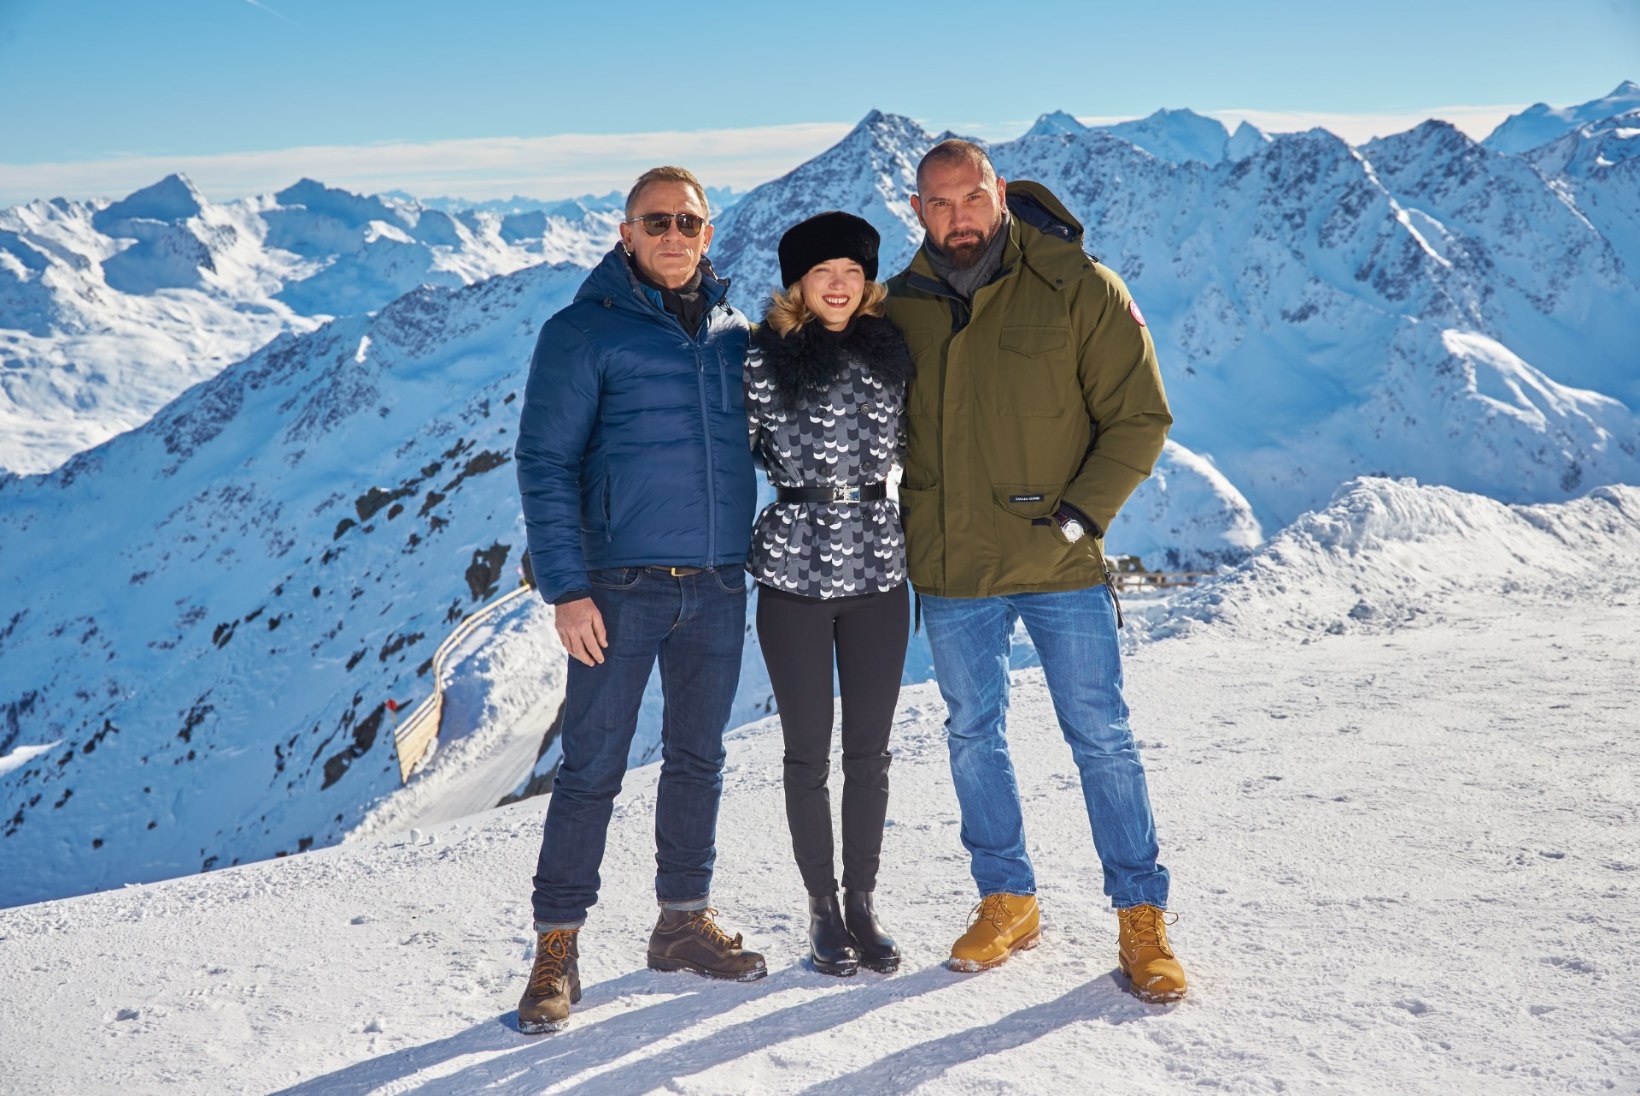 FOTOD: uue Bondi-filmi staarid poseerisid võtete vahepeal Austria maalilises looduses